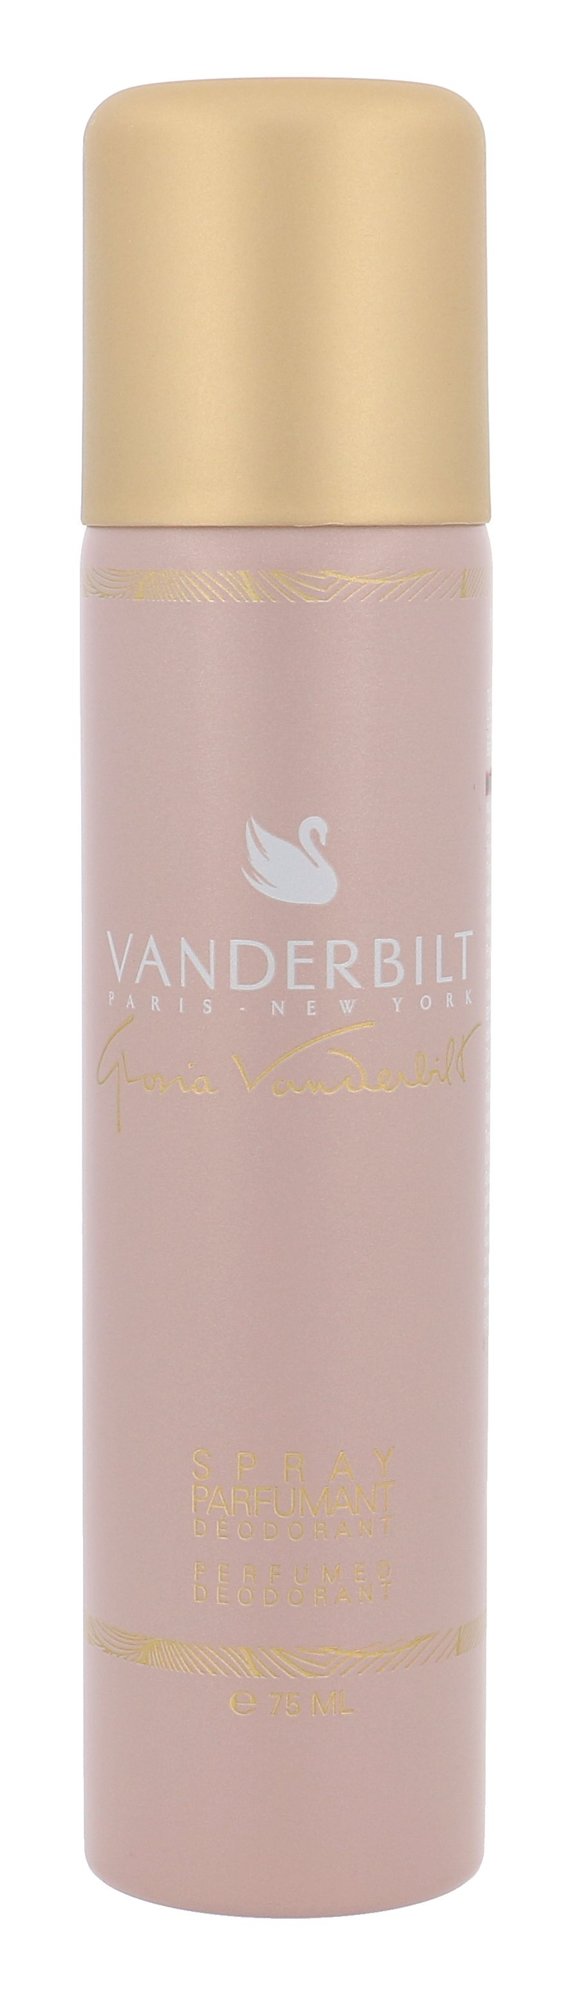 Gloria Vanderbilt Vanderbilt 75ml dezodorantas